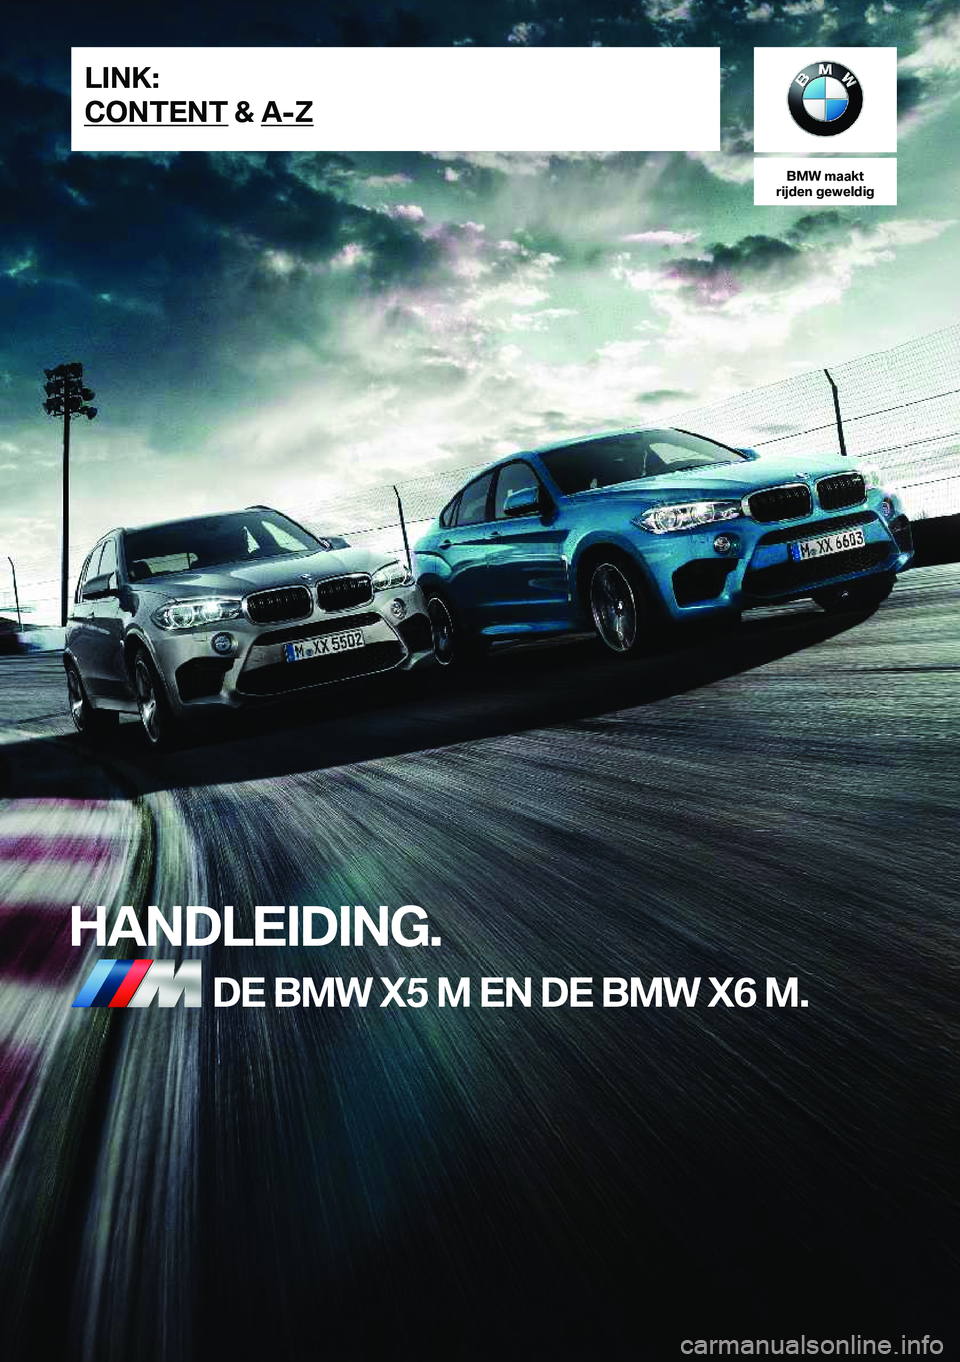 BMW X6 M 2019  Instructieboekjes (in Dutch) �B�M�W��m�a�a�k�t
�r�i�j�d�e�n��g�e�w�e�l�d�i�g
�H�A�N�D�L�E�I�D�I�N�G�.�D�E��B�M�W��X�5��M��E�N��D�E��B�M�W��X�6��M�.�L�I�N�K�:
�C�O�N�T�E�N�T��&��A�-�Z�O�n�l�i�n�e��E�d�i�t�i�o�n��f�o�